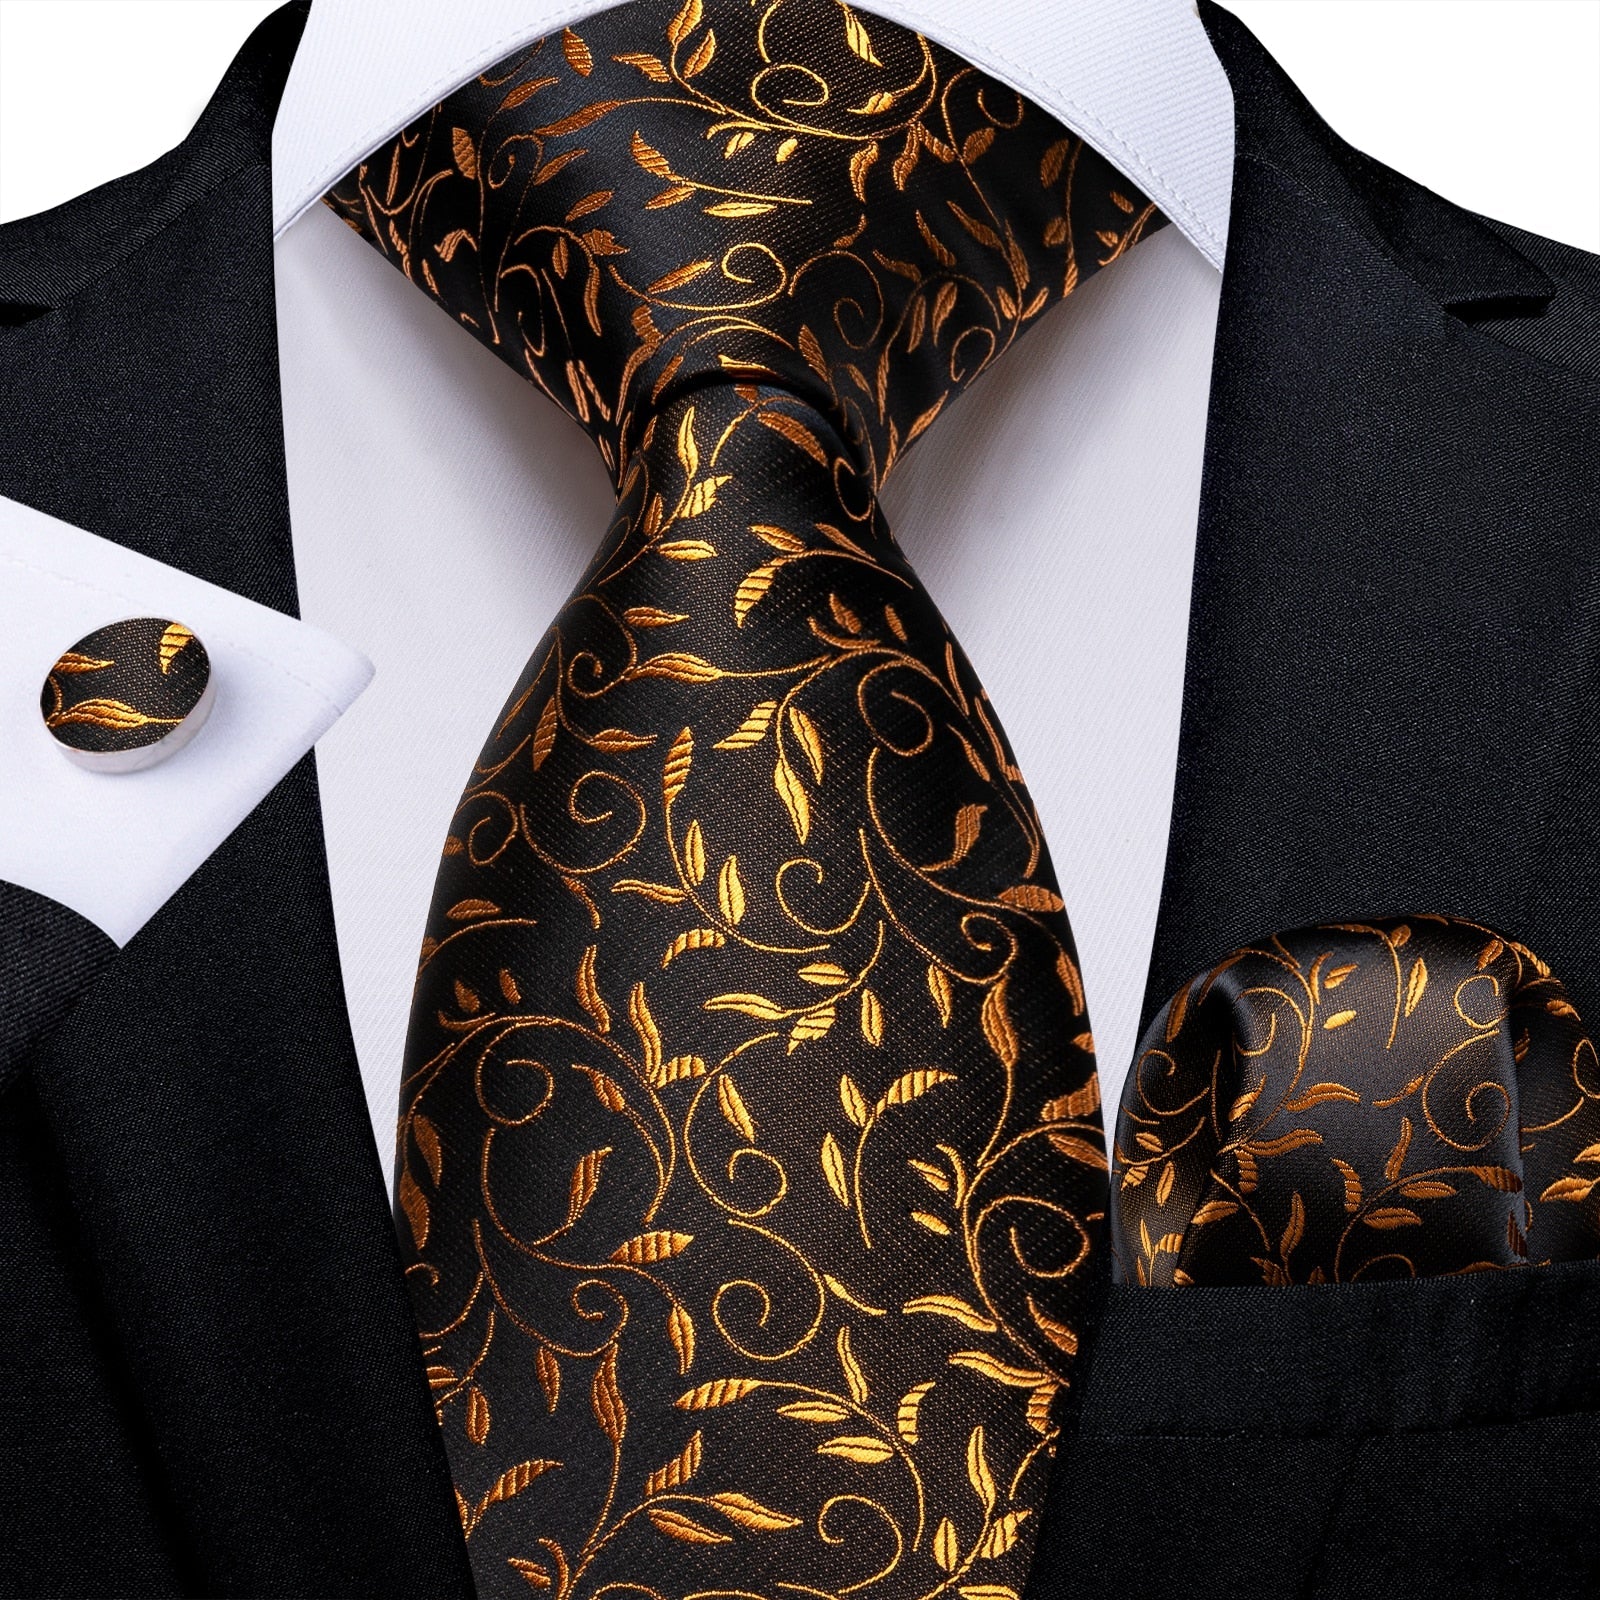 Blumige Krawatte in Gold und Braun